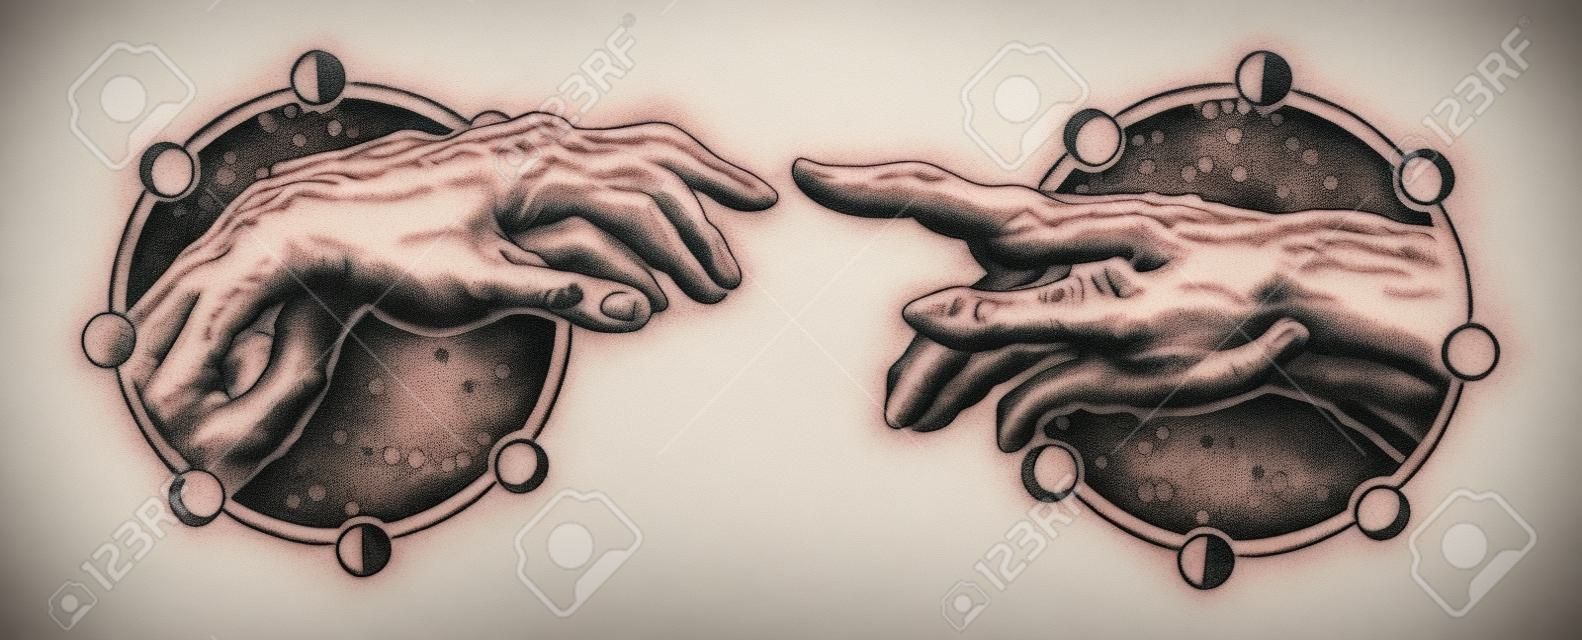 Il tocco di Dio di Michelangelo. Mani umane toccanti con le dita tatuaggio e la maglietta design. Mani di tatuaggio Rinascimento. Dei e Adamo, simbolo di spiritualità, religione, connessione e interazione